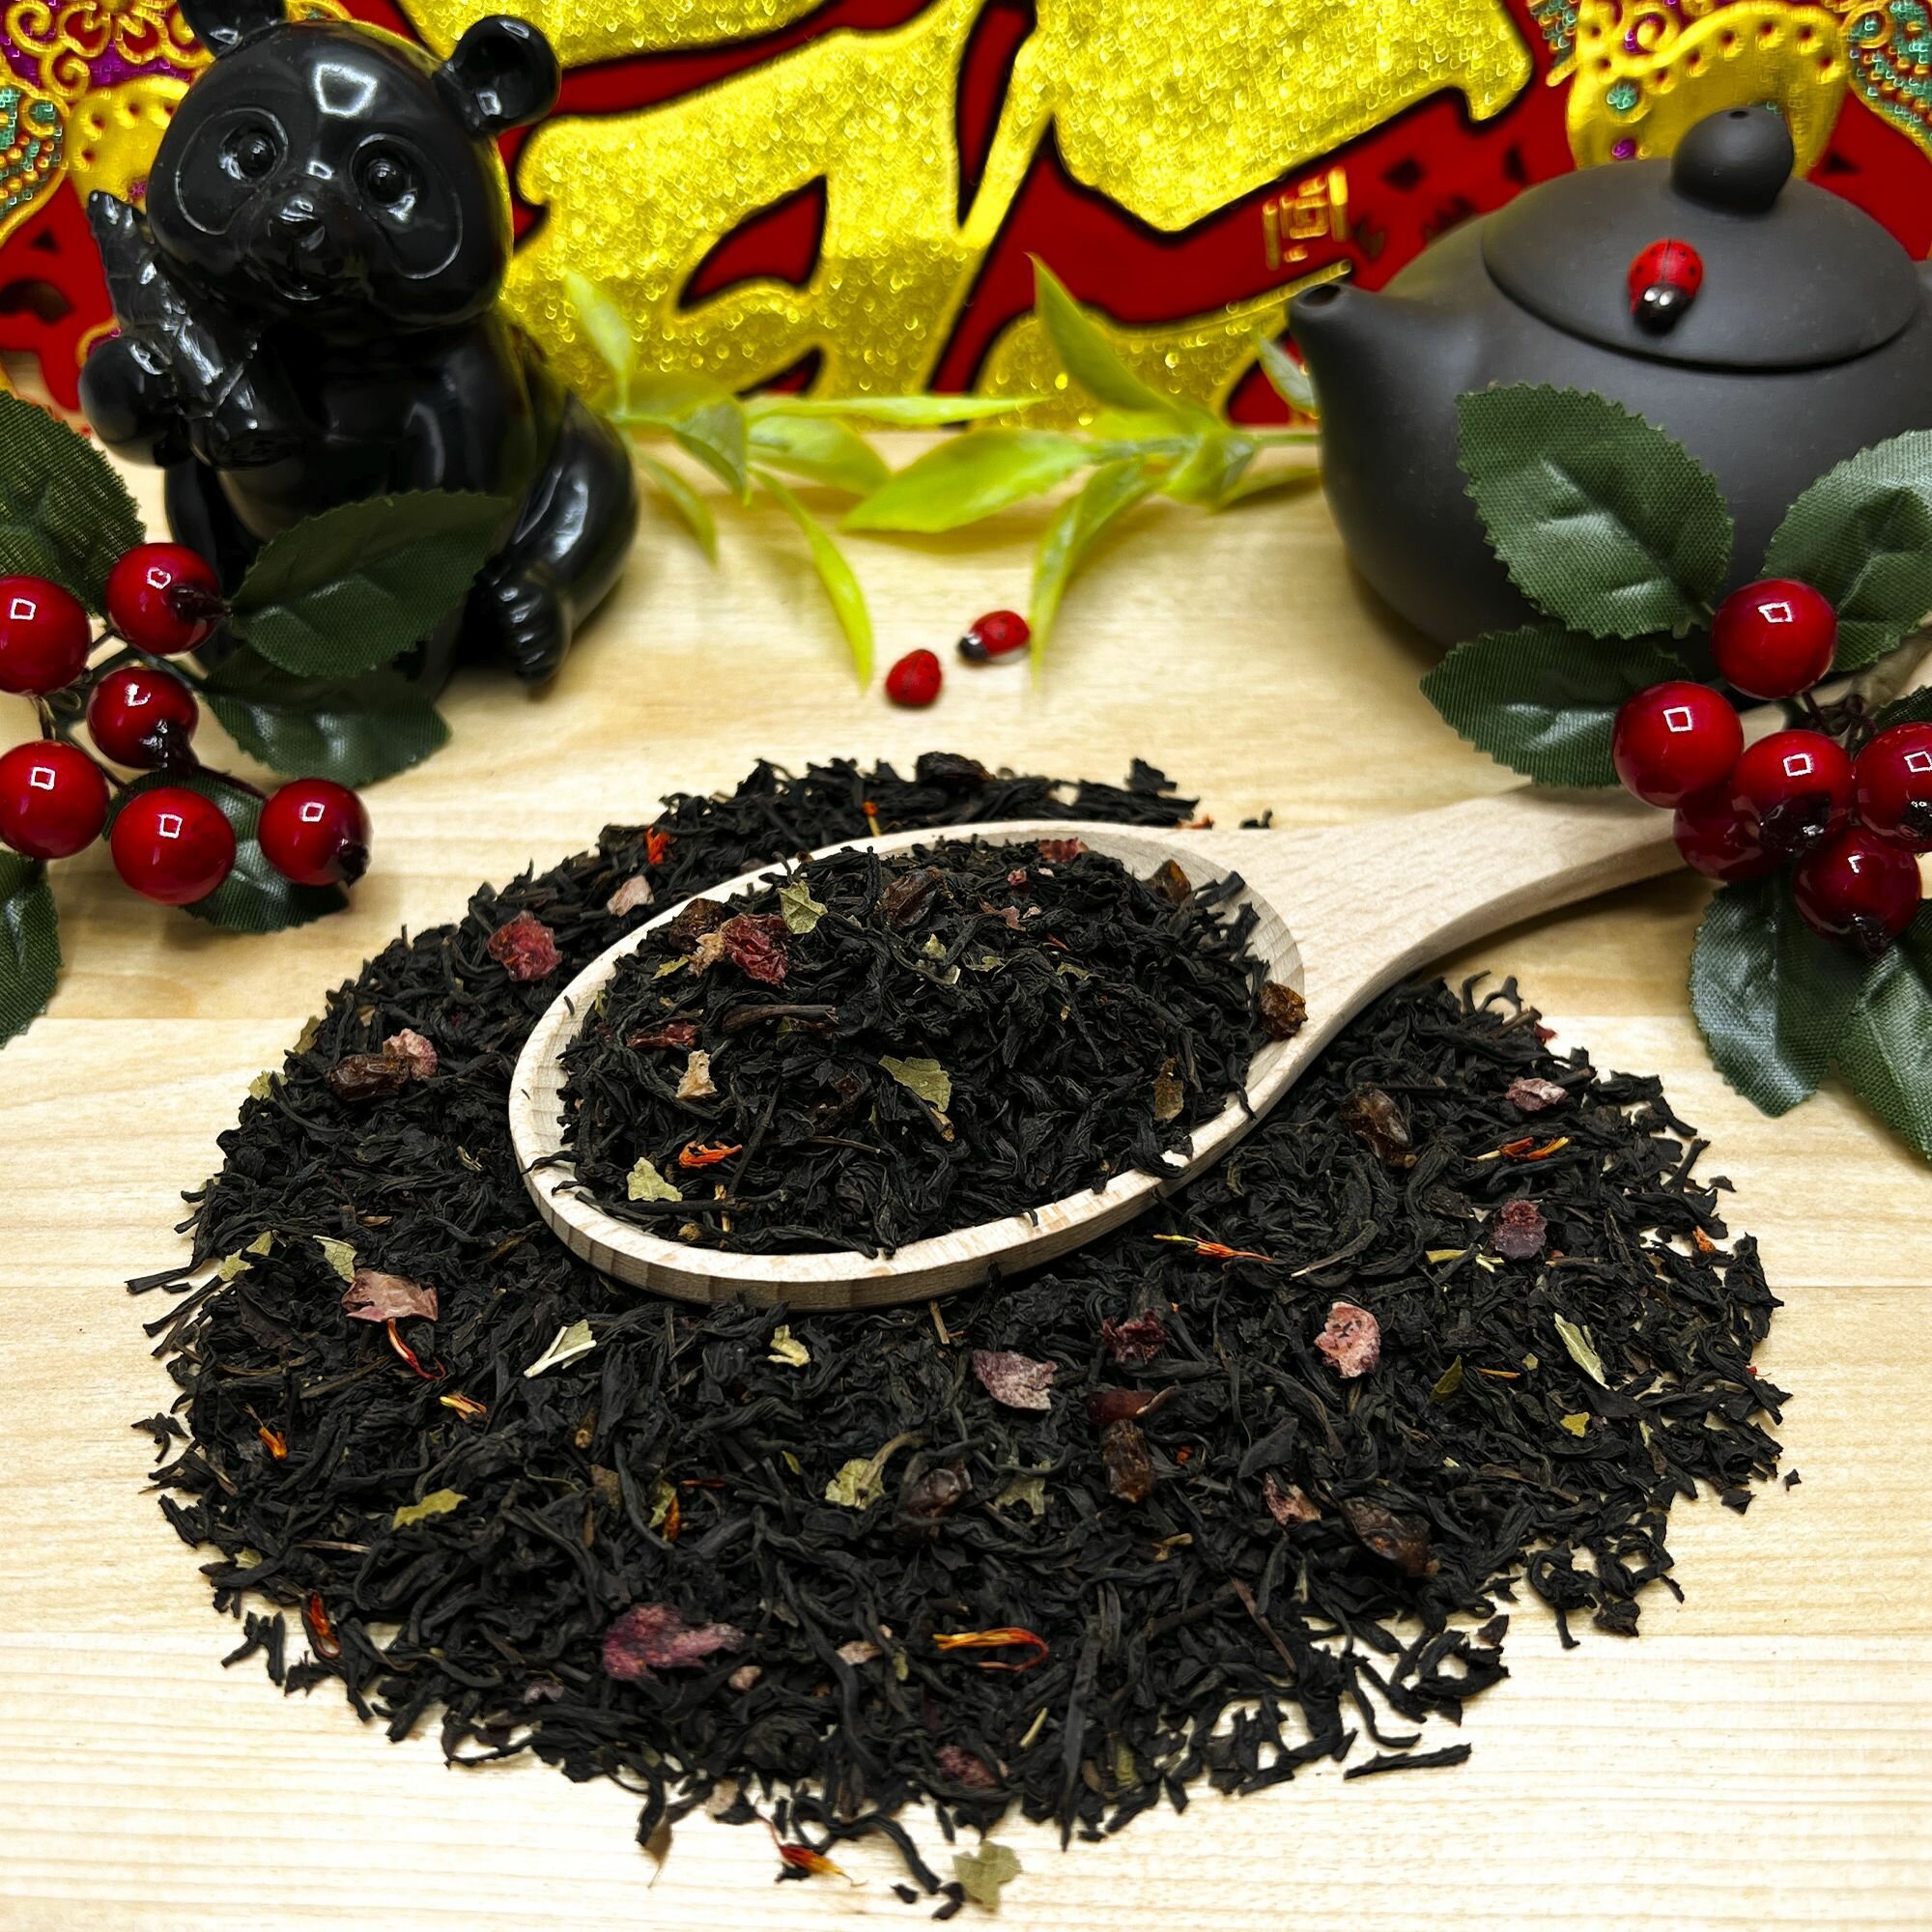 Индийский Черный чай с барбарисом, клюквой и смородиной "Спелый барбарис" Полезный чай / HEALTHY TEA, 50 гр